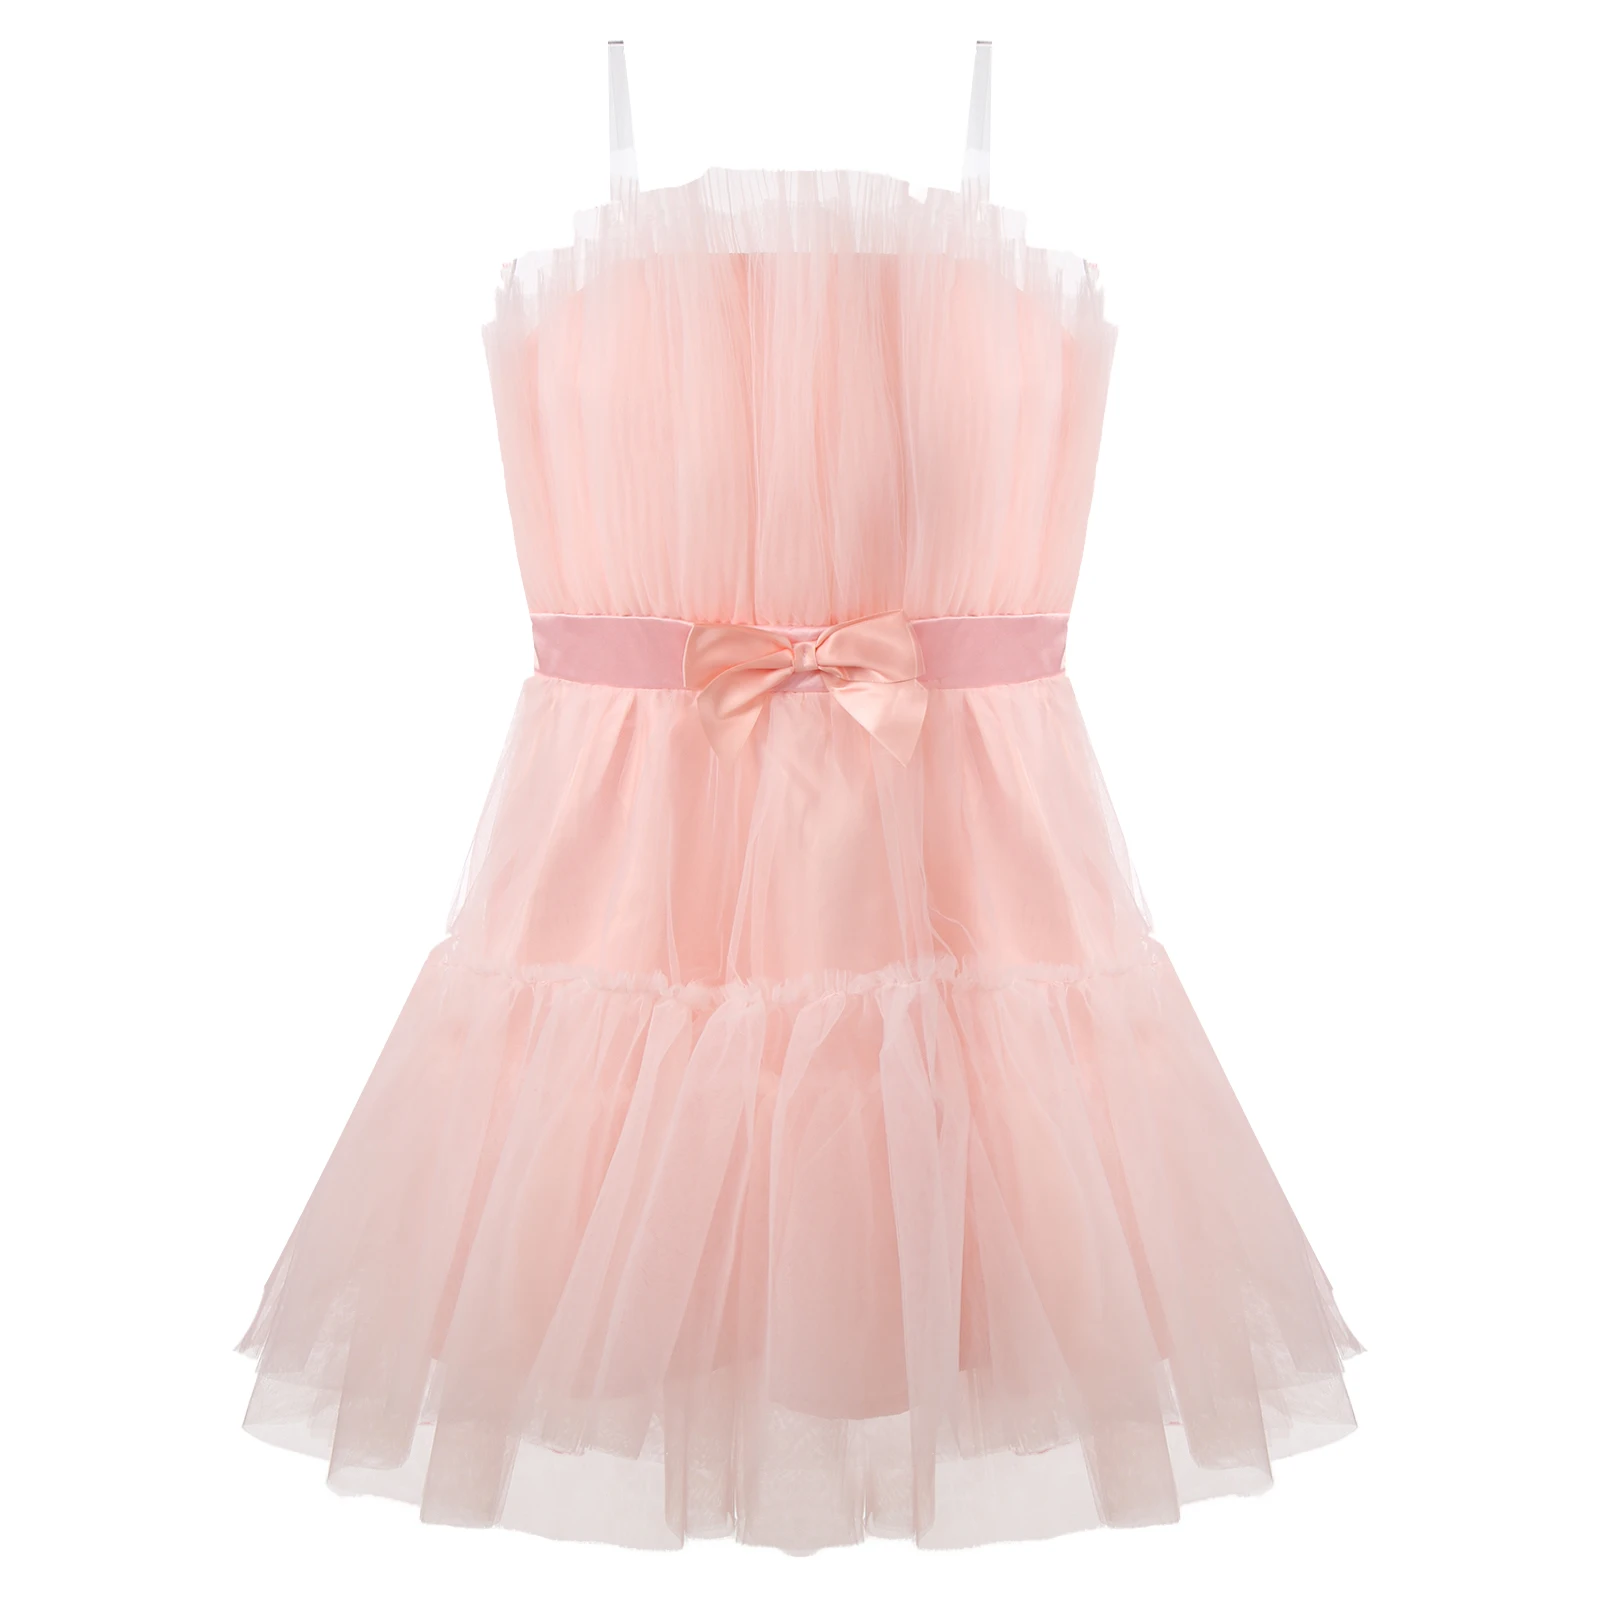 Choomomo Bayan Saf Straplez Prenses Kısa Elbiseler Çok Katmanlı Örgü Yüksek Bel Hattı Parti Elbise İlmek ile Doğum Günü için . ' - ' . 5